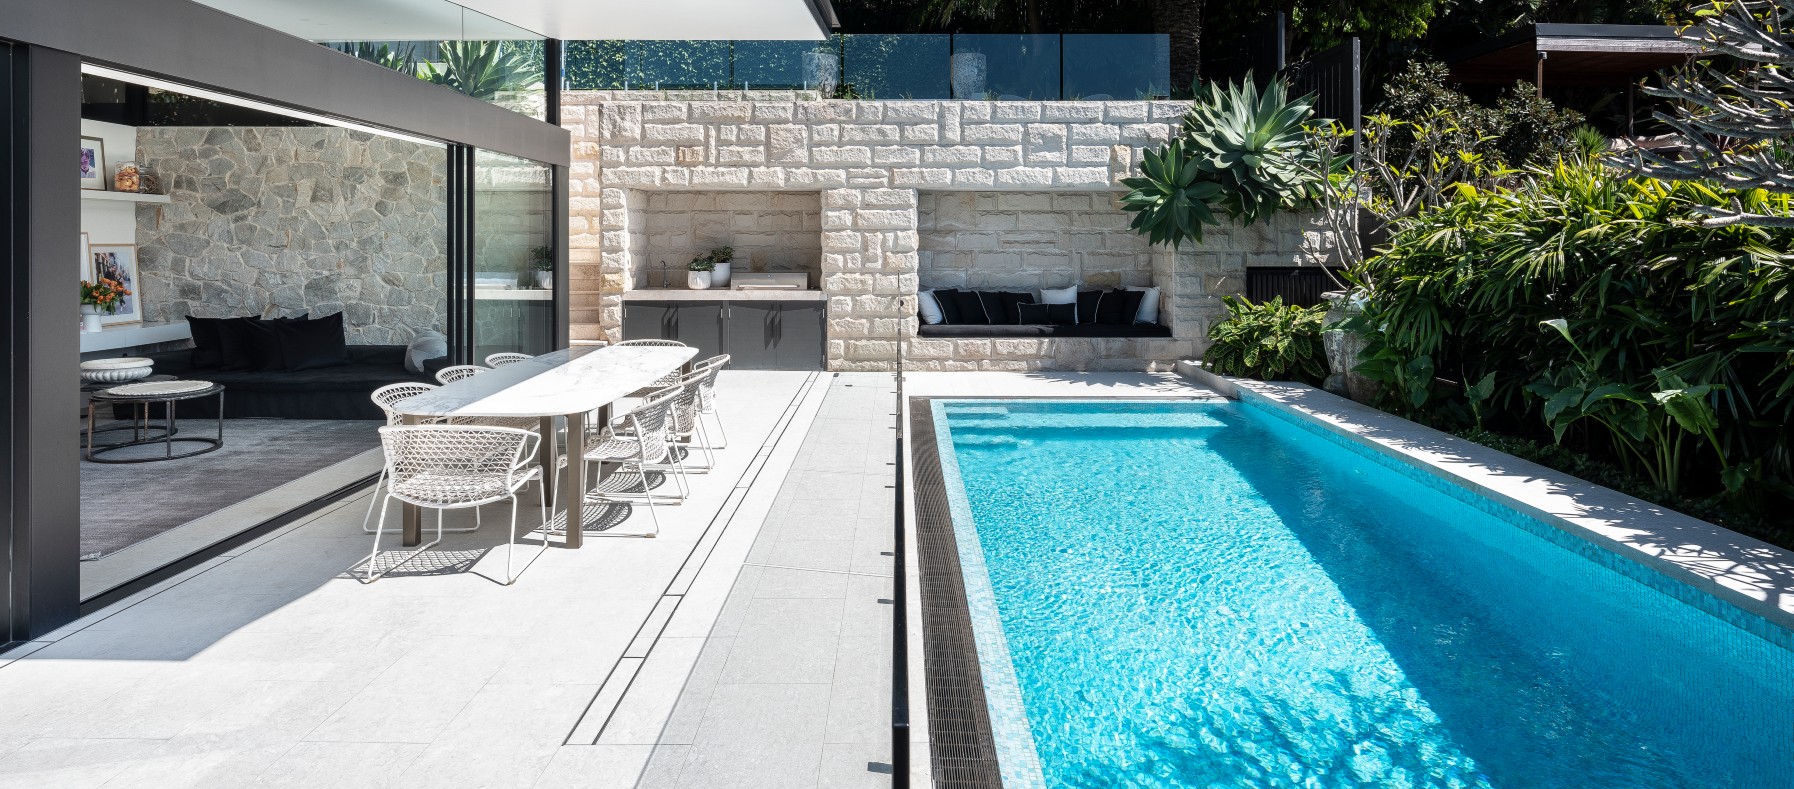 custom limestone pool